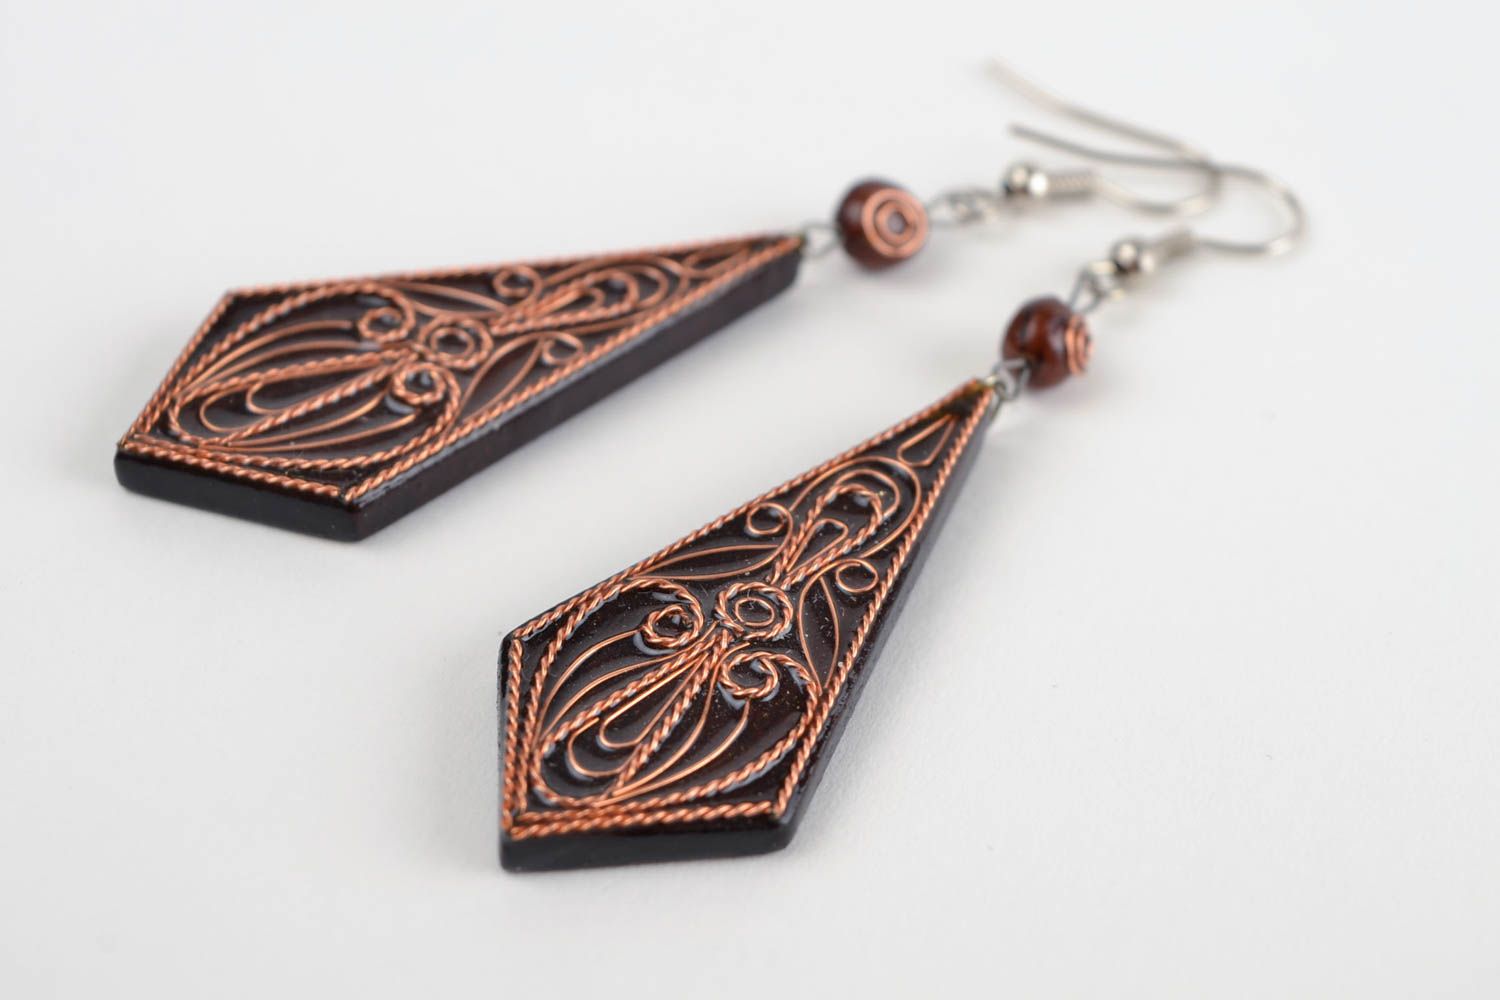 Handmade earrings cute earrings wooden jewelry designer accessories gift ideas photo 4